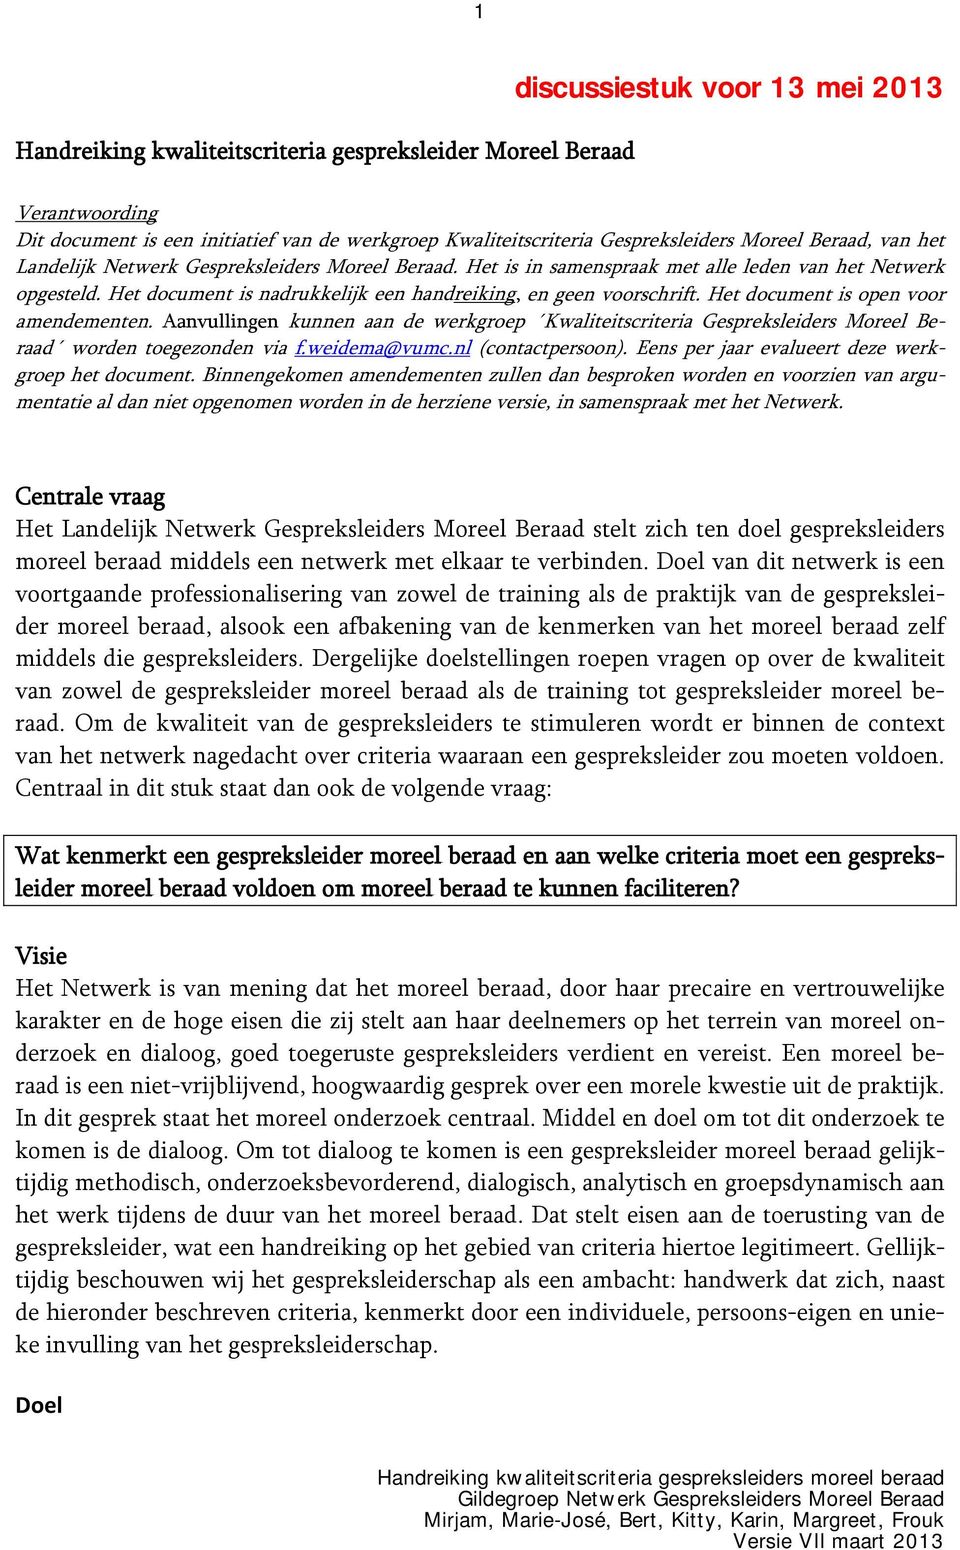 Het document is open voor amendementen. Aanvullingen kunnen aan de werkgroep Kwaliteitscriteria Gespreksleiders Moreel Beraad worden toegezonden via f.weidema@vumc.nl (contactpersoon).